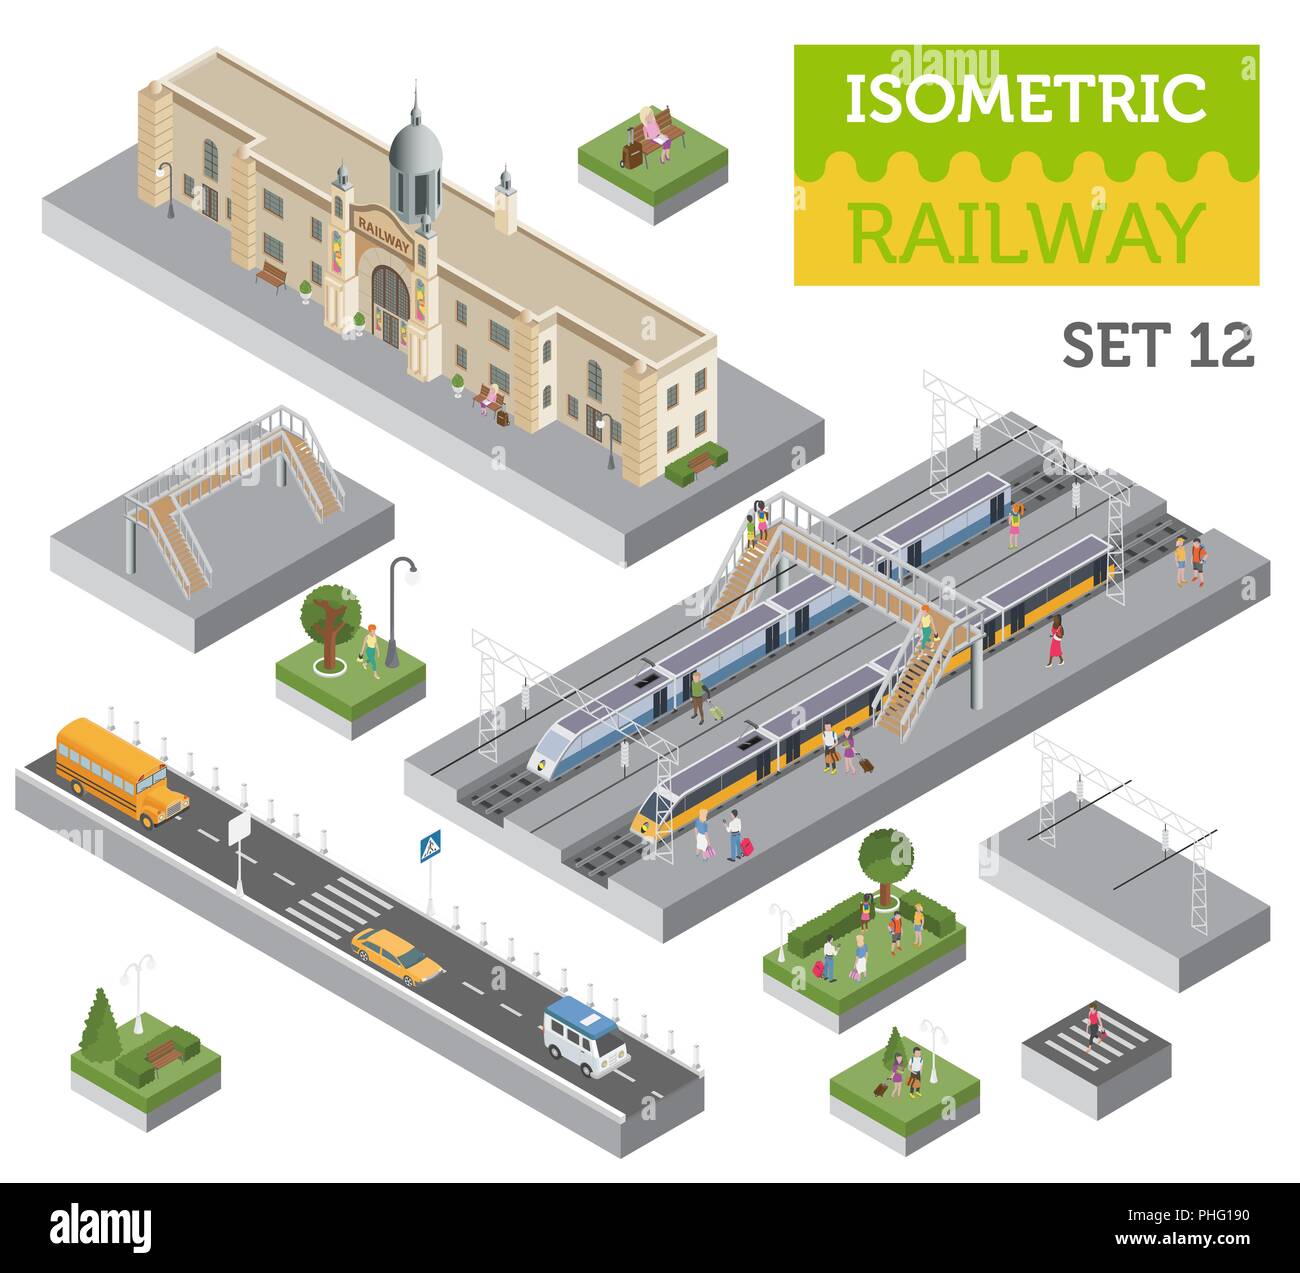 3d-isometrische Bahnhof und Stadtplan Konstruktor Elemente isoliert auf Weiss. Ihre eigene Bahn Infografik Sammlung aufzubauen. Vector Illustration Stock Vektor